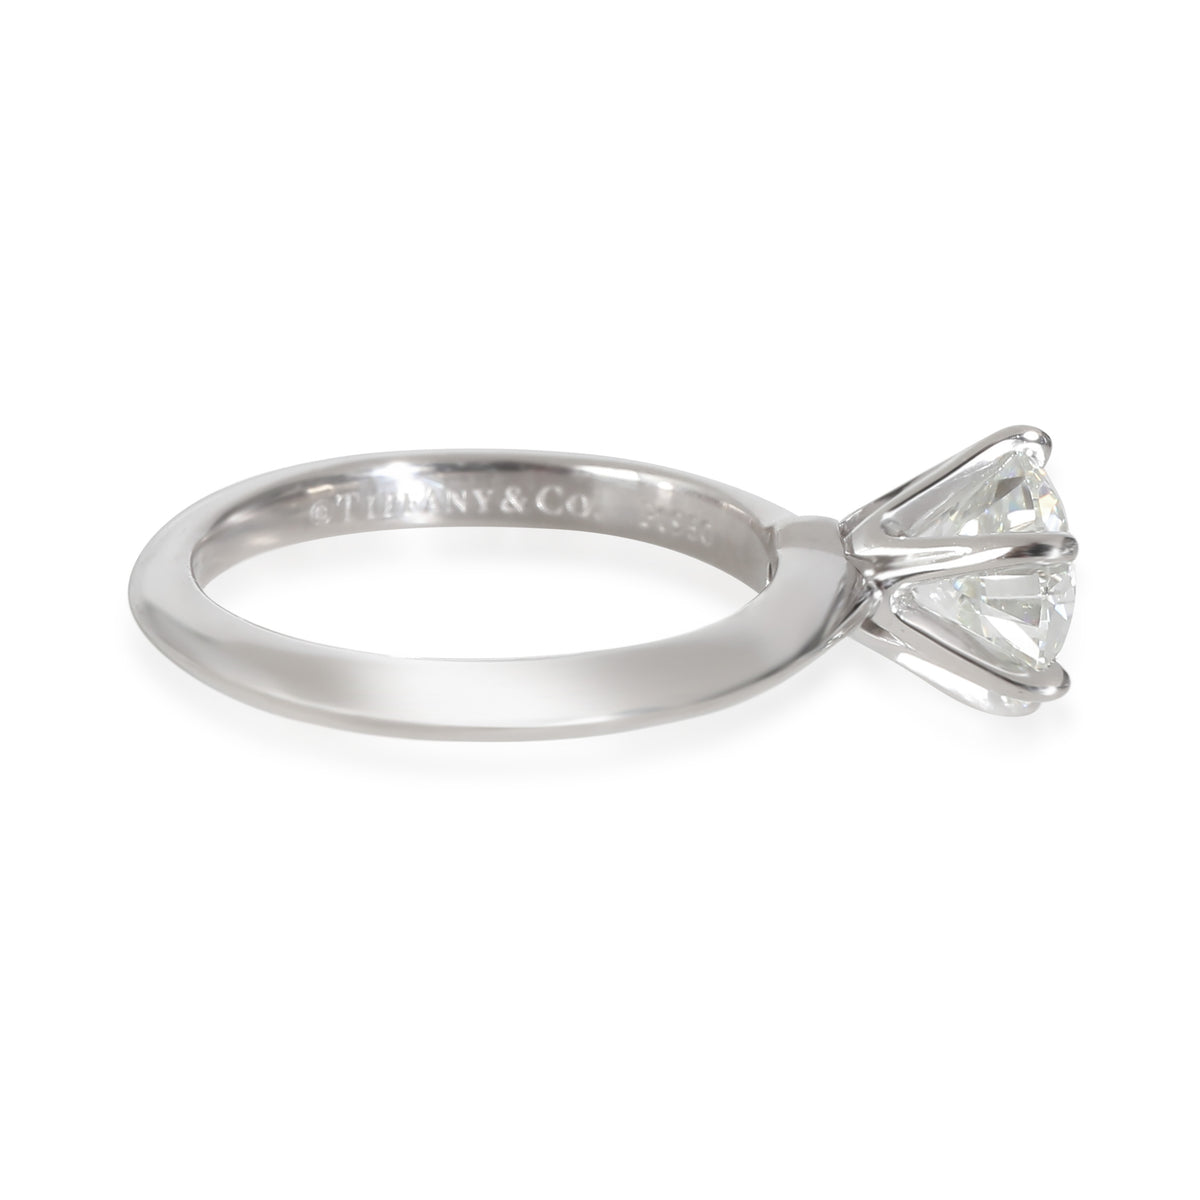 Diamond Engagement Ring in Platinum I VS1 1.38 CTW